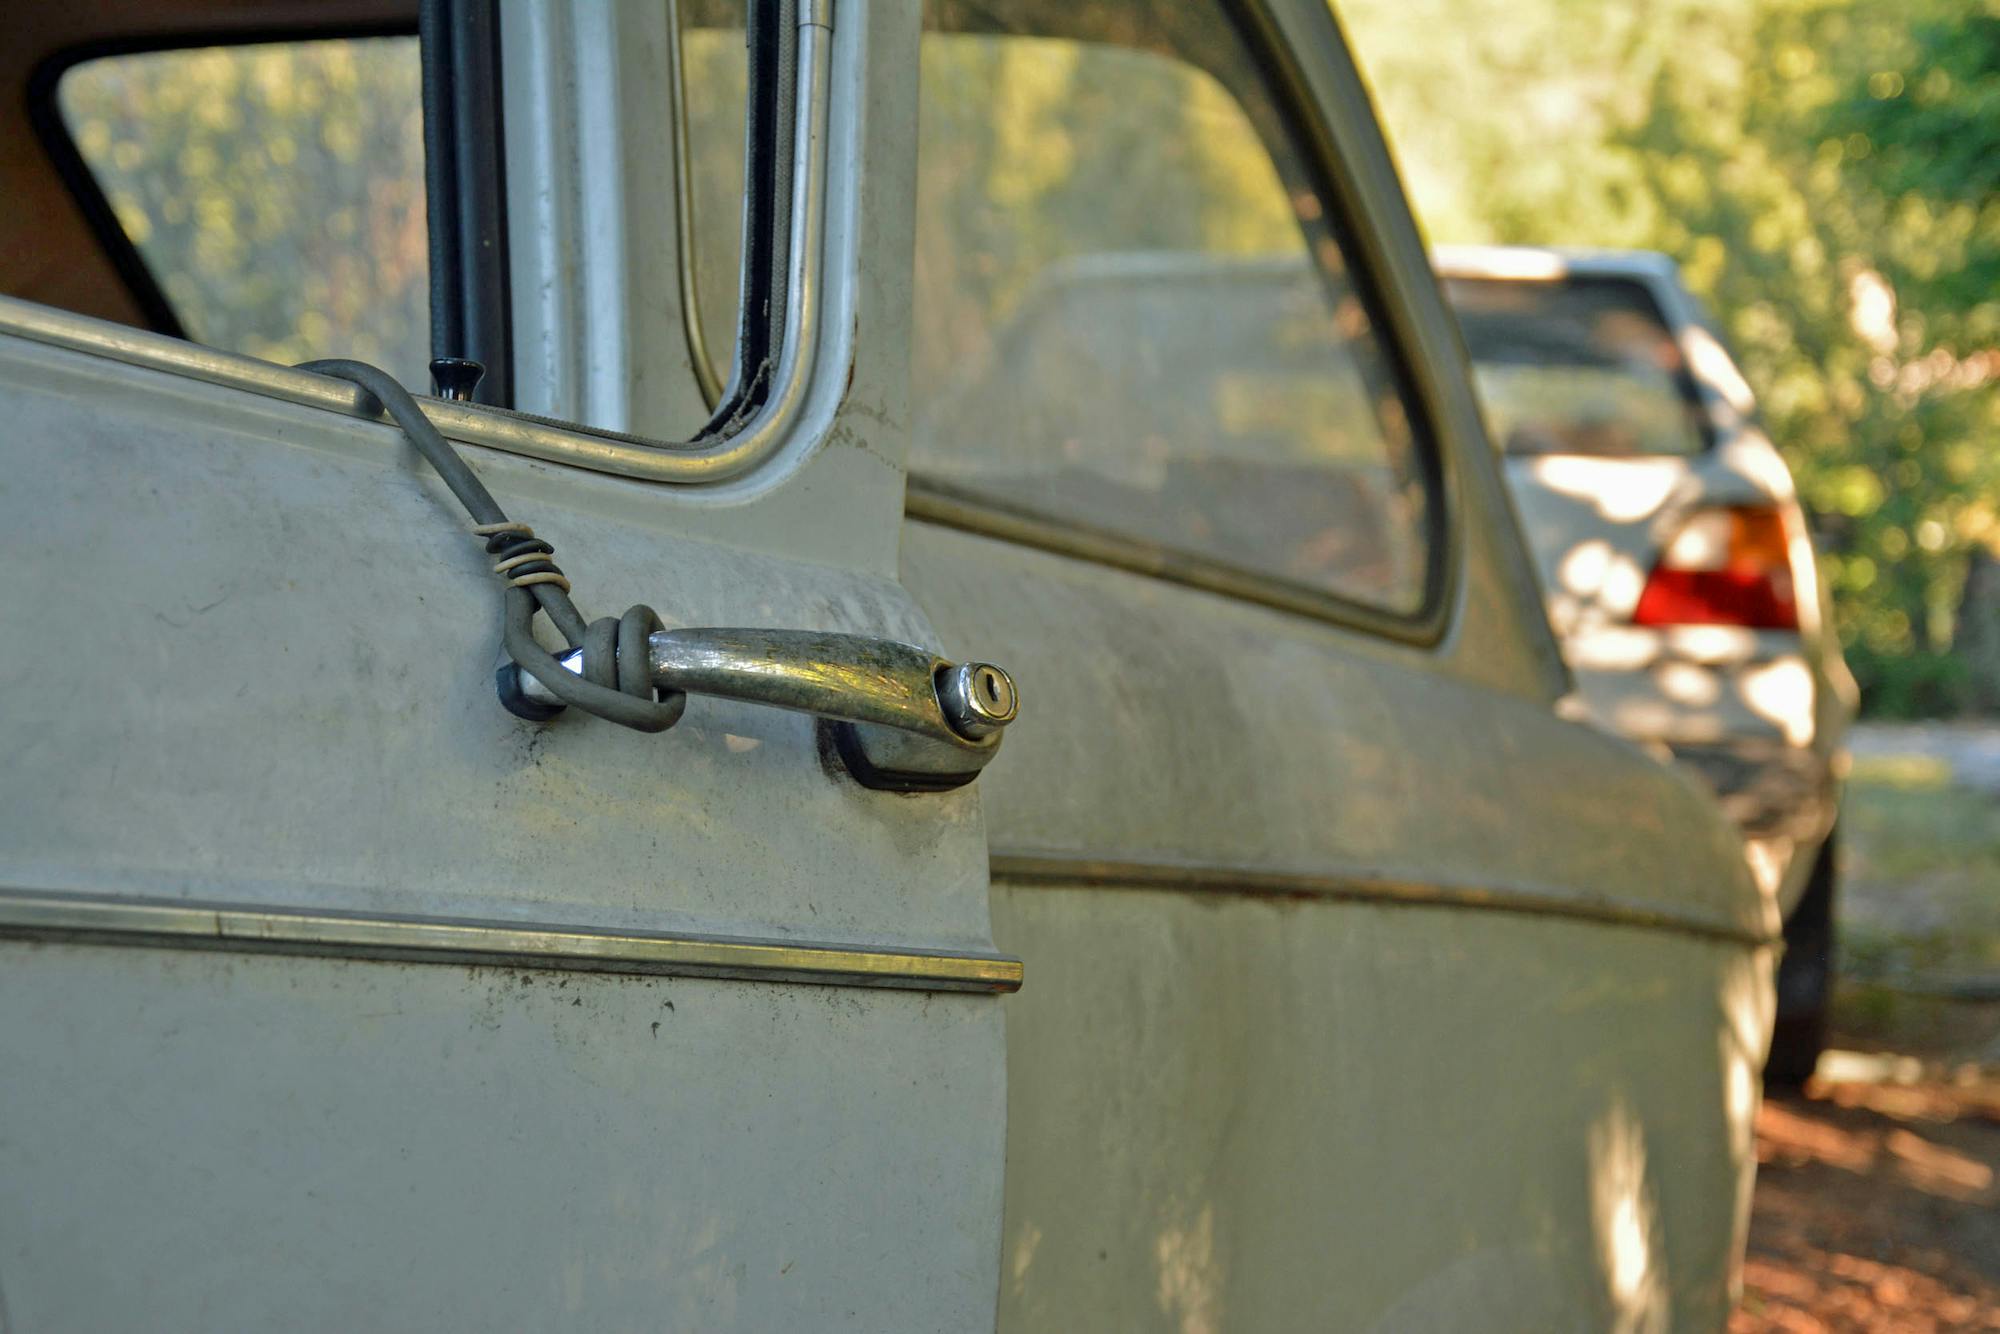 1969 Fiat 850 door handle